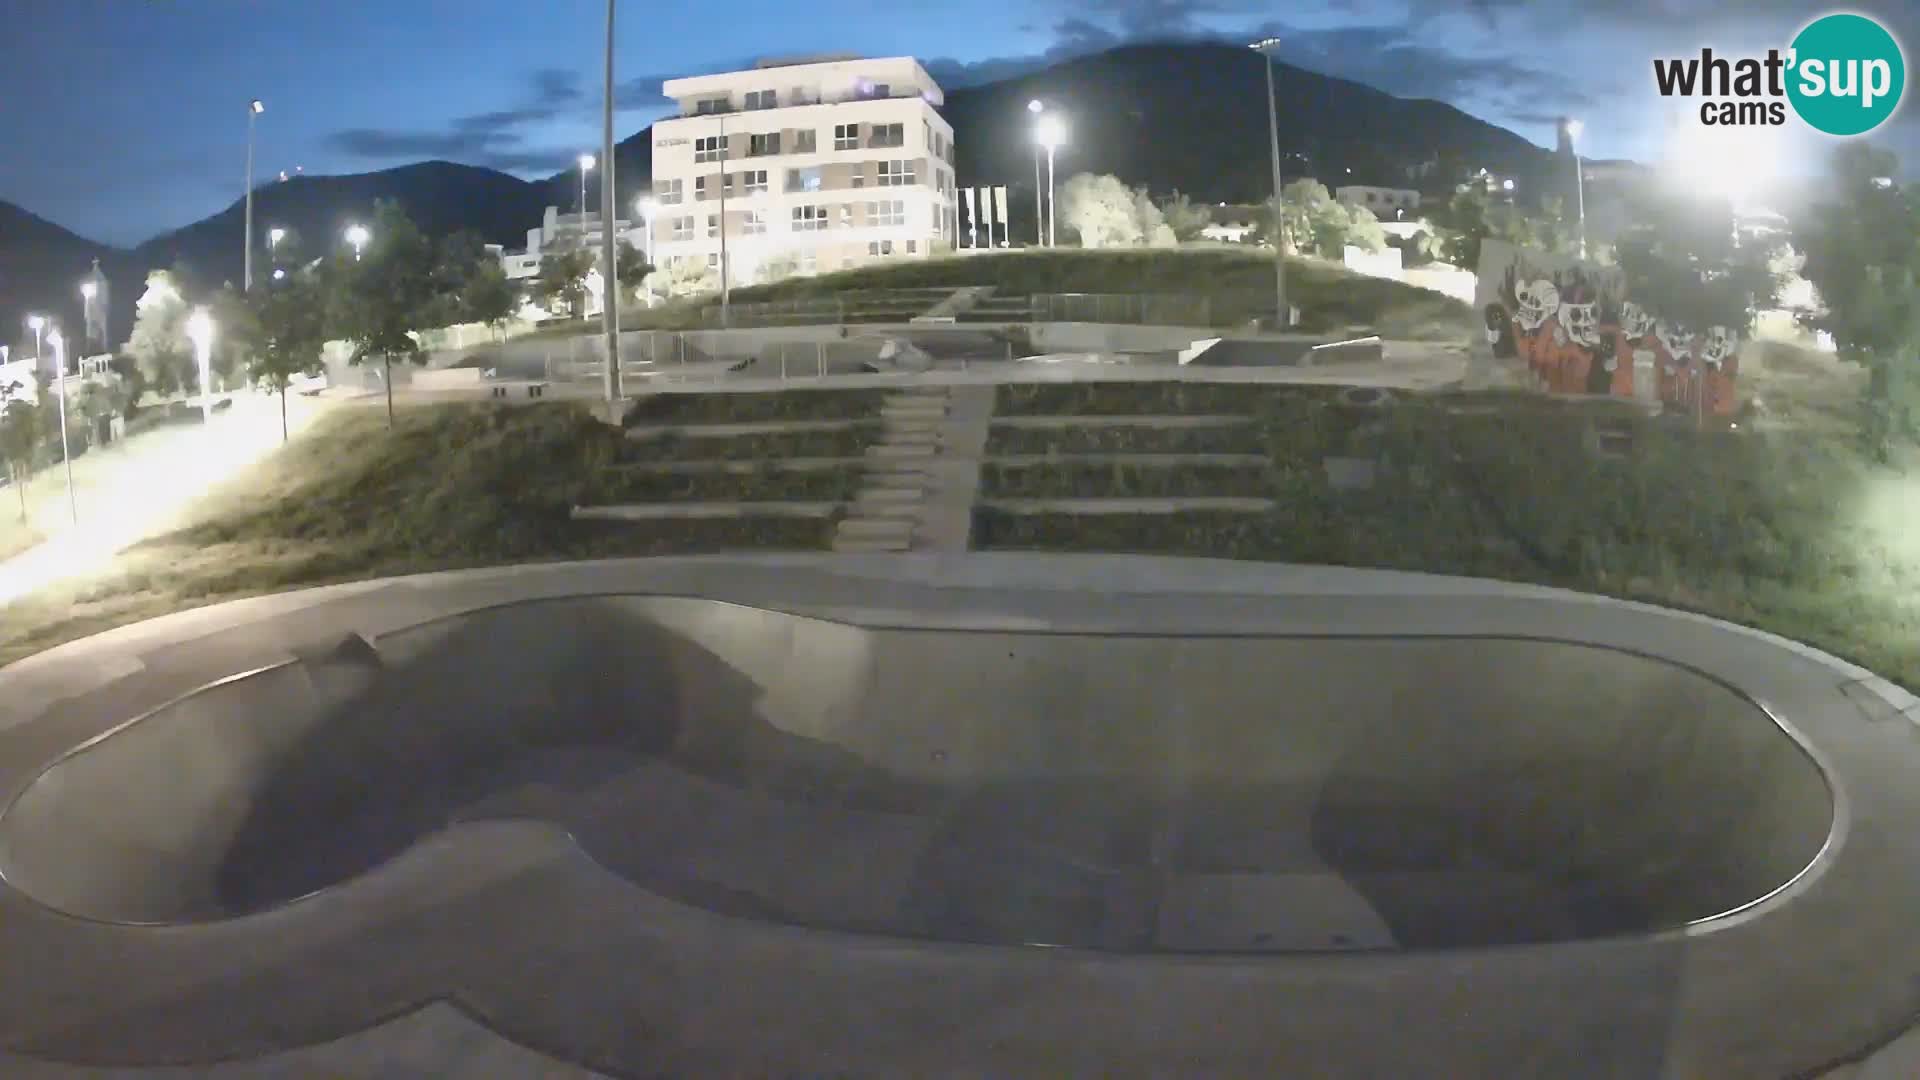 Skate park Webcam Nova Gorica – Slovenia